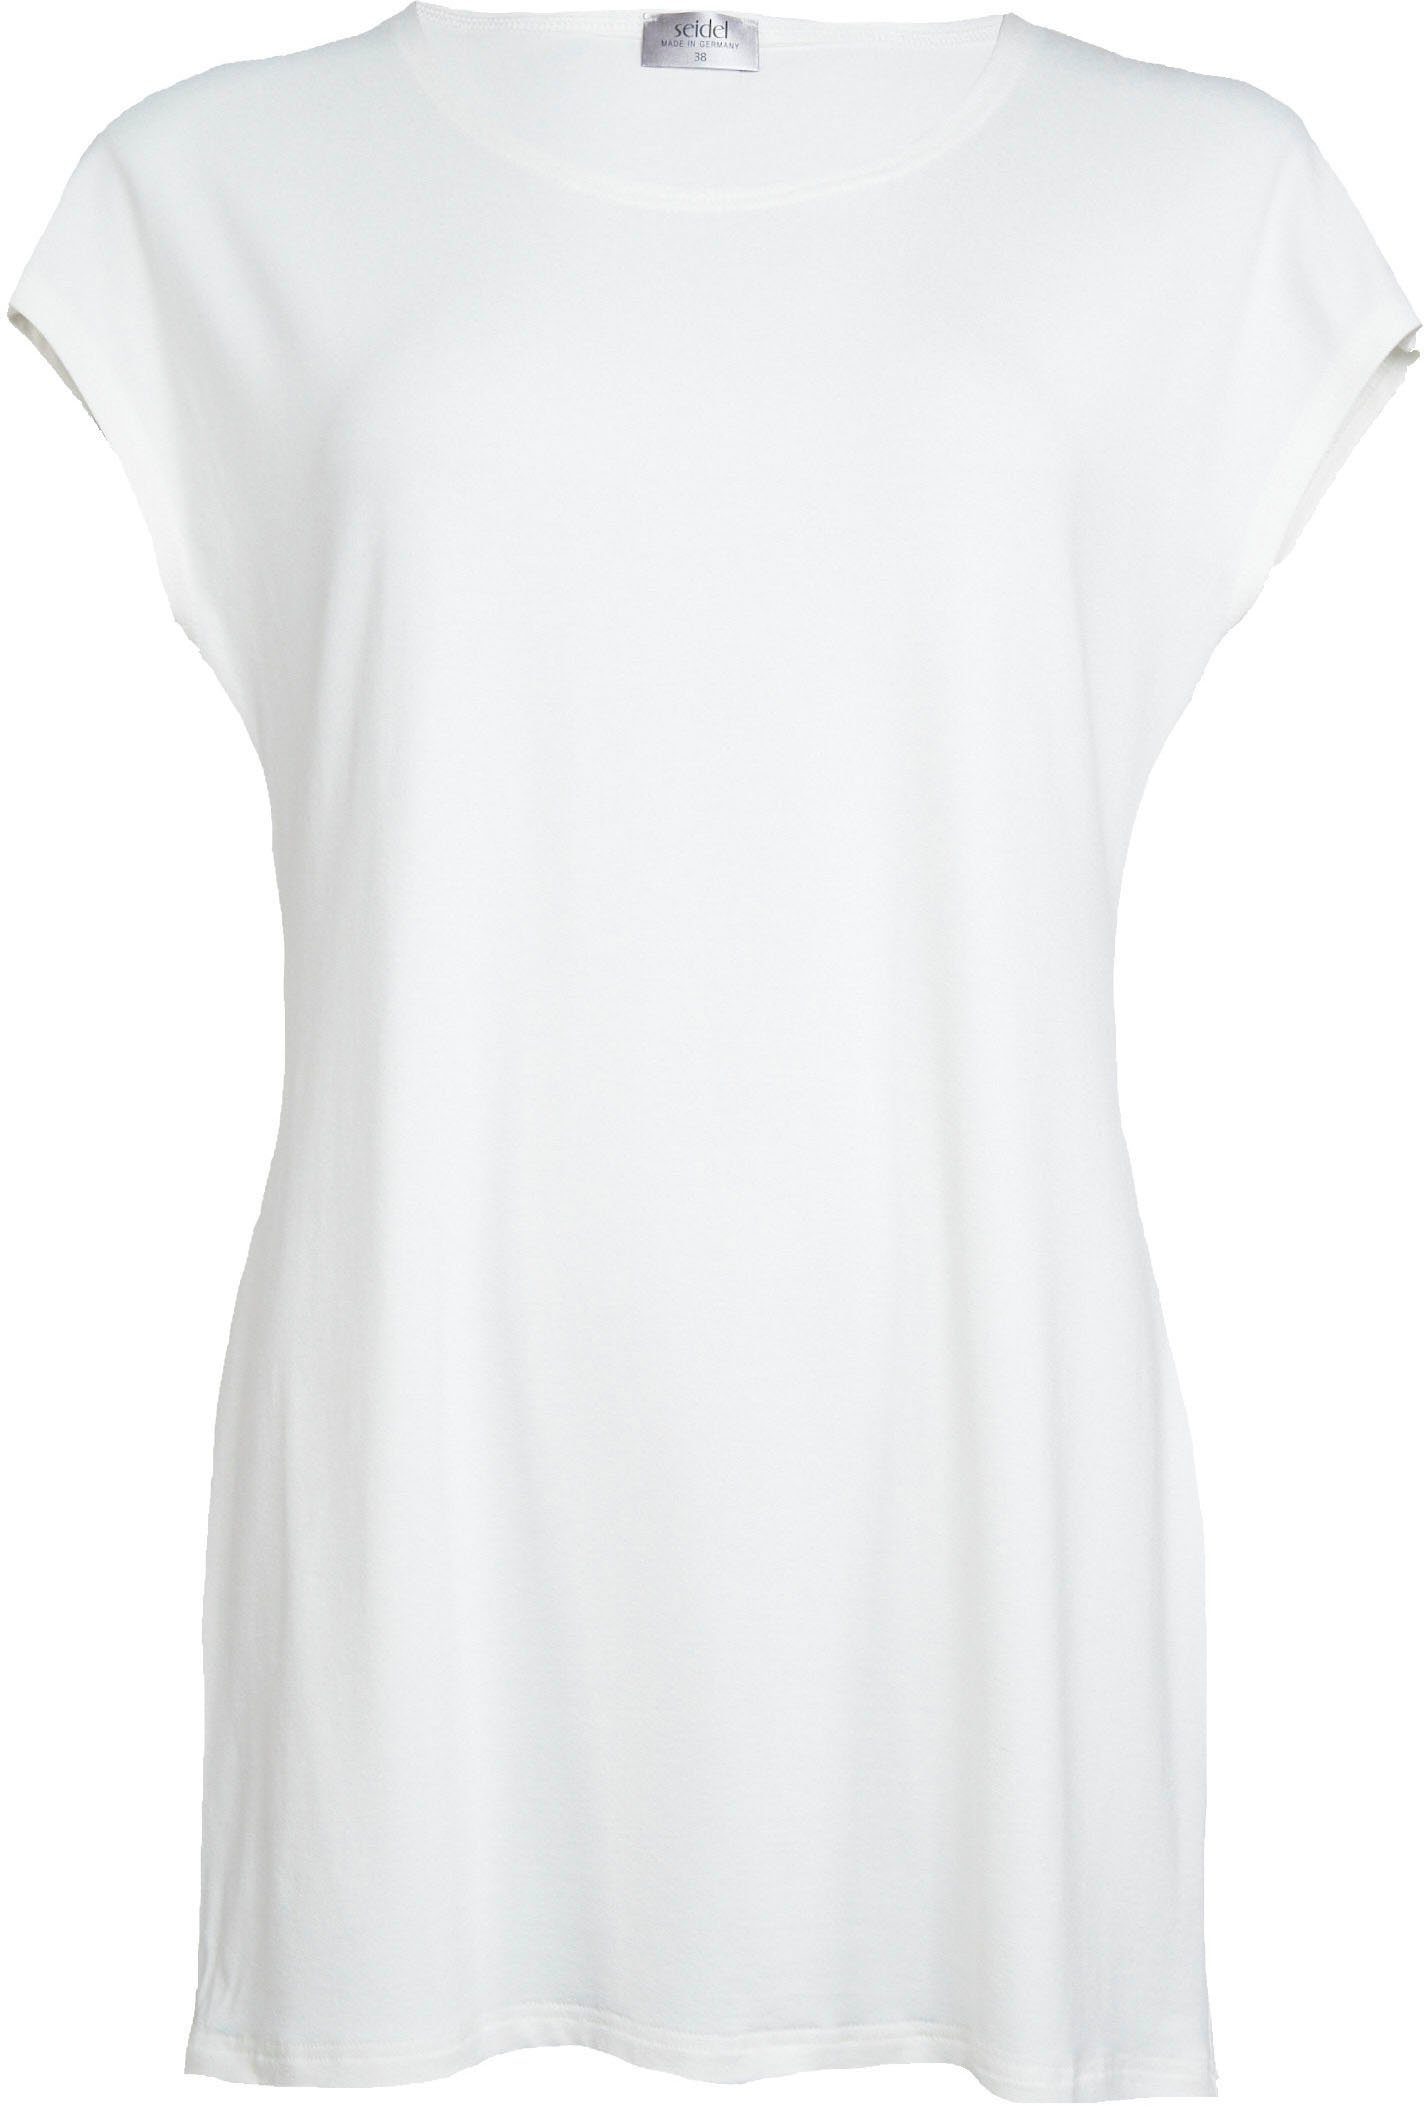 Seidel Moden offwhite Longshirt schlichtem Design in